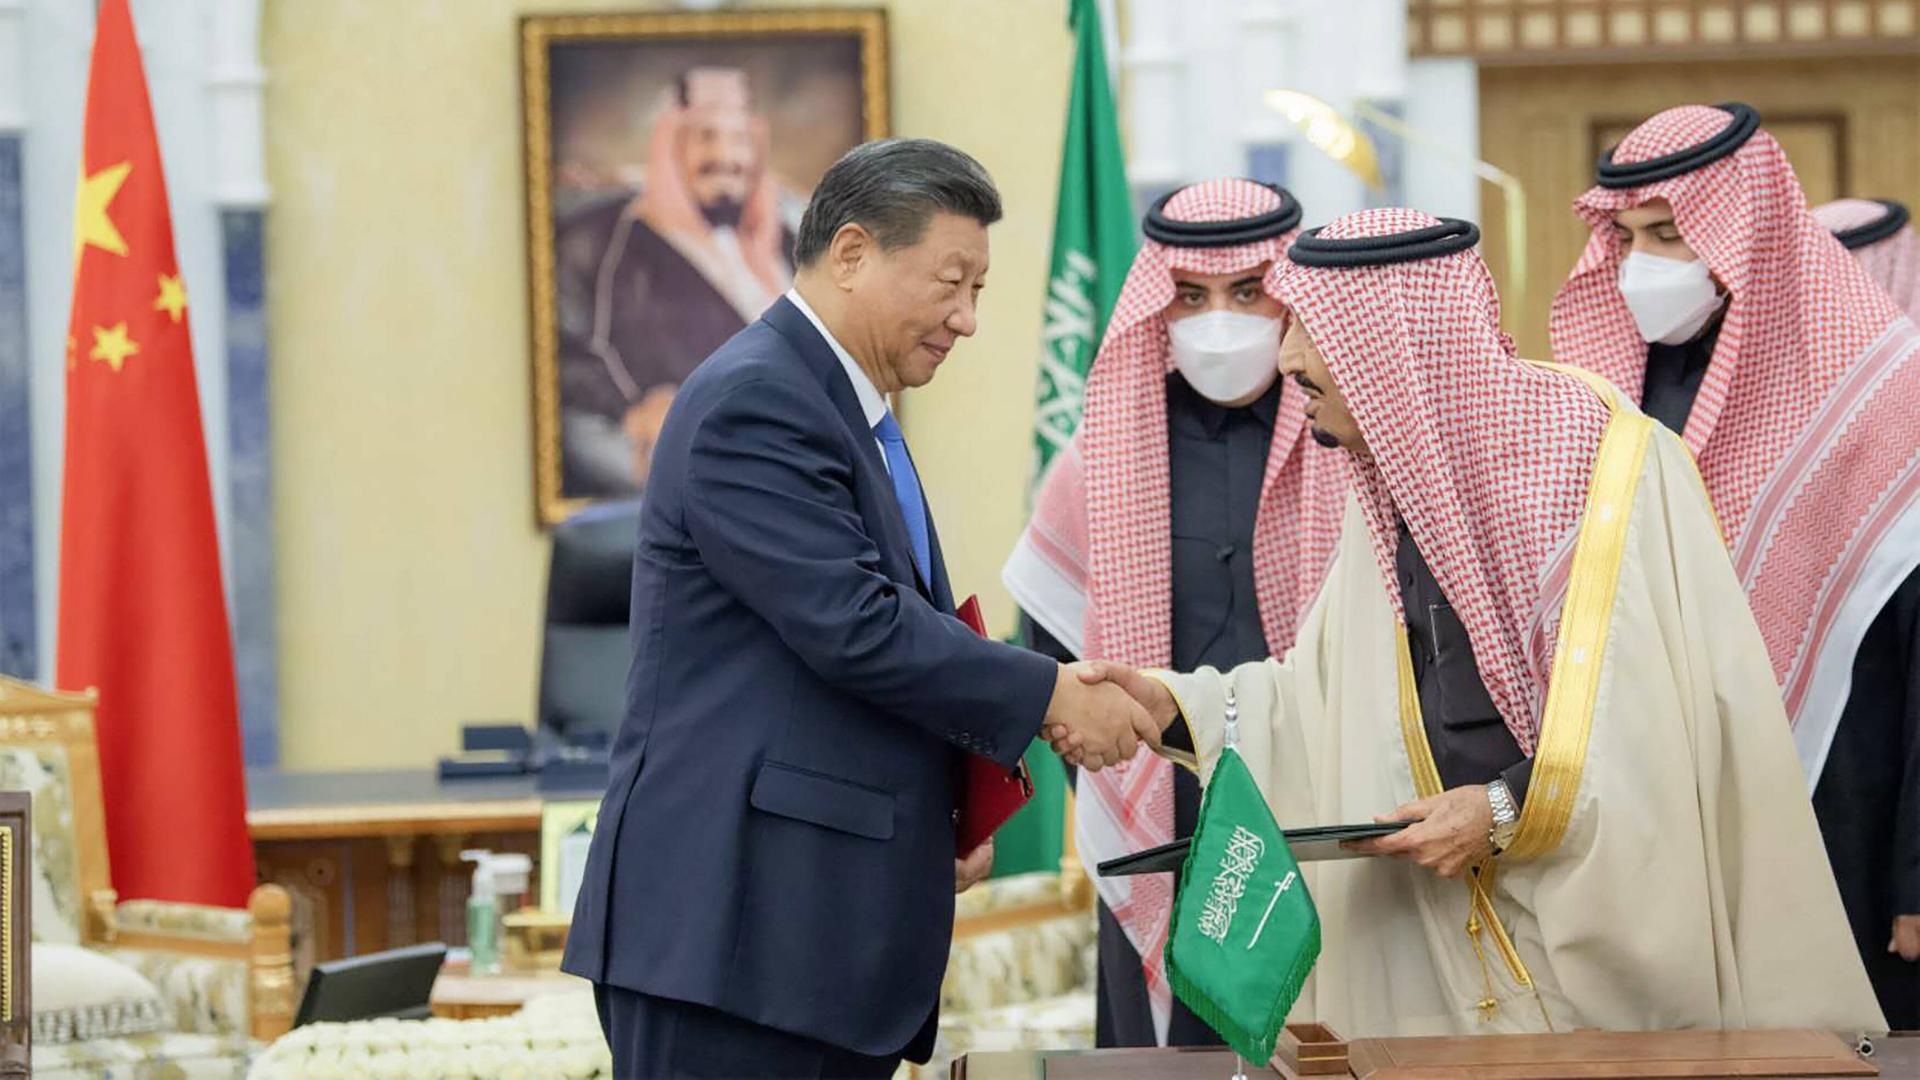 Staatengruppe - Saudi-Arabien nähert sich "Shanghaier Organisation für Zusammenarbeit" (SCO) um China, Russland und Indien an